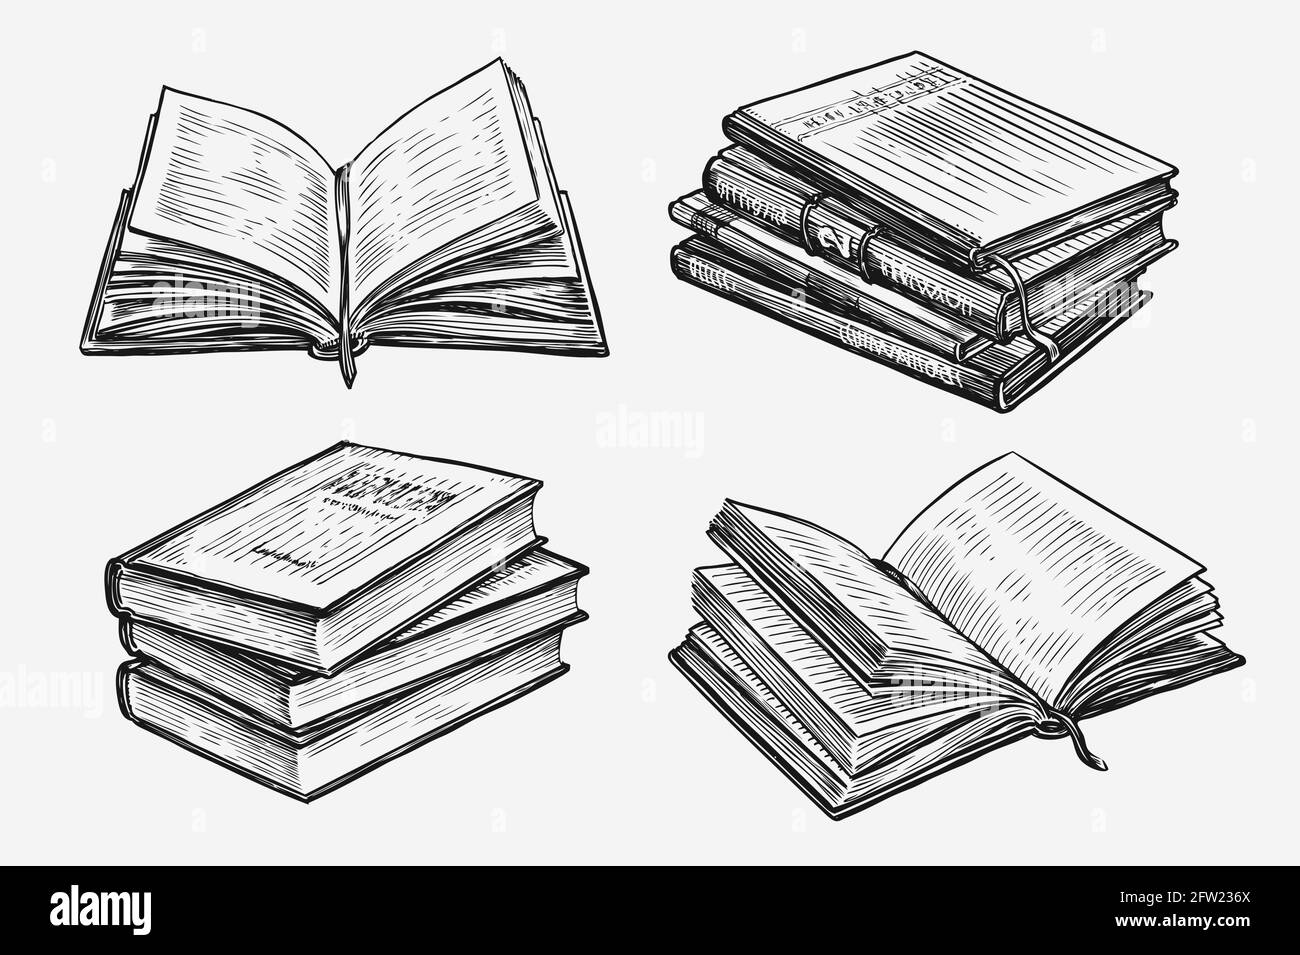 Ensemble de livres dessinés à la main. Illustration vectorielle d'esquisse vintage du concept éducatif Illustration de Vecteur